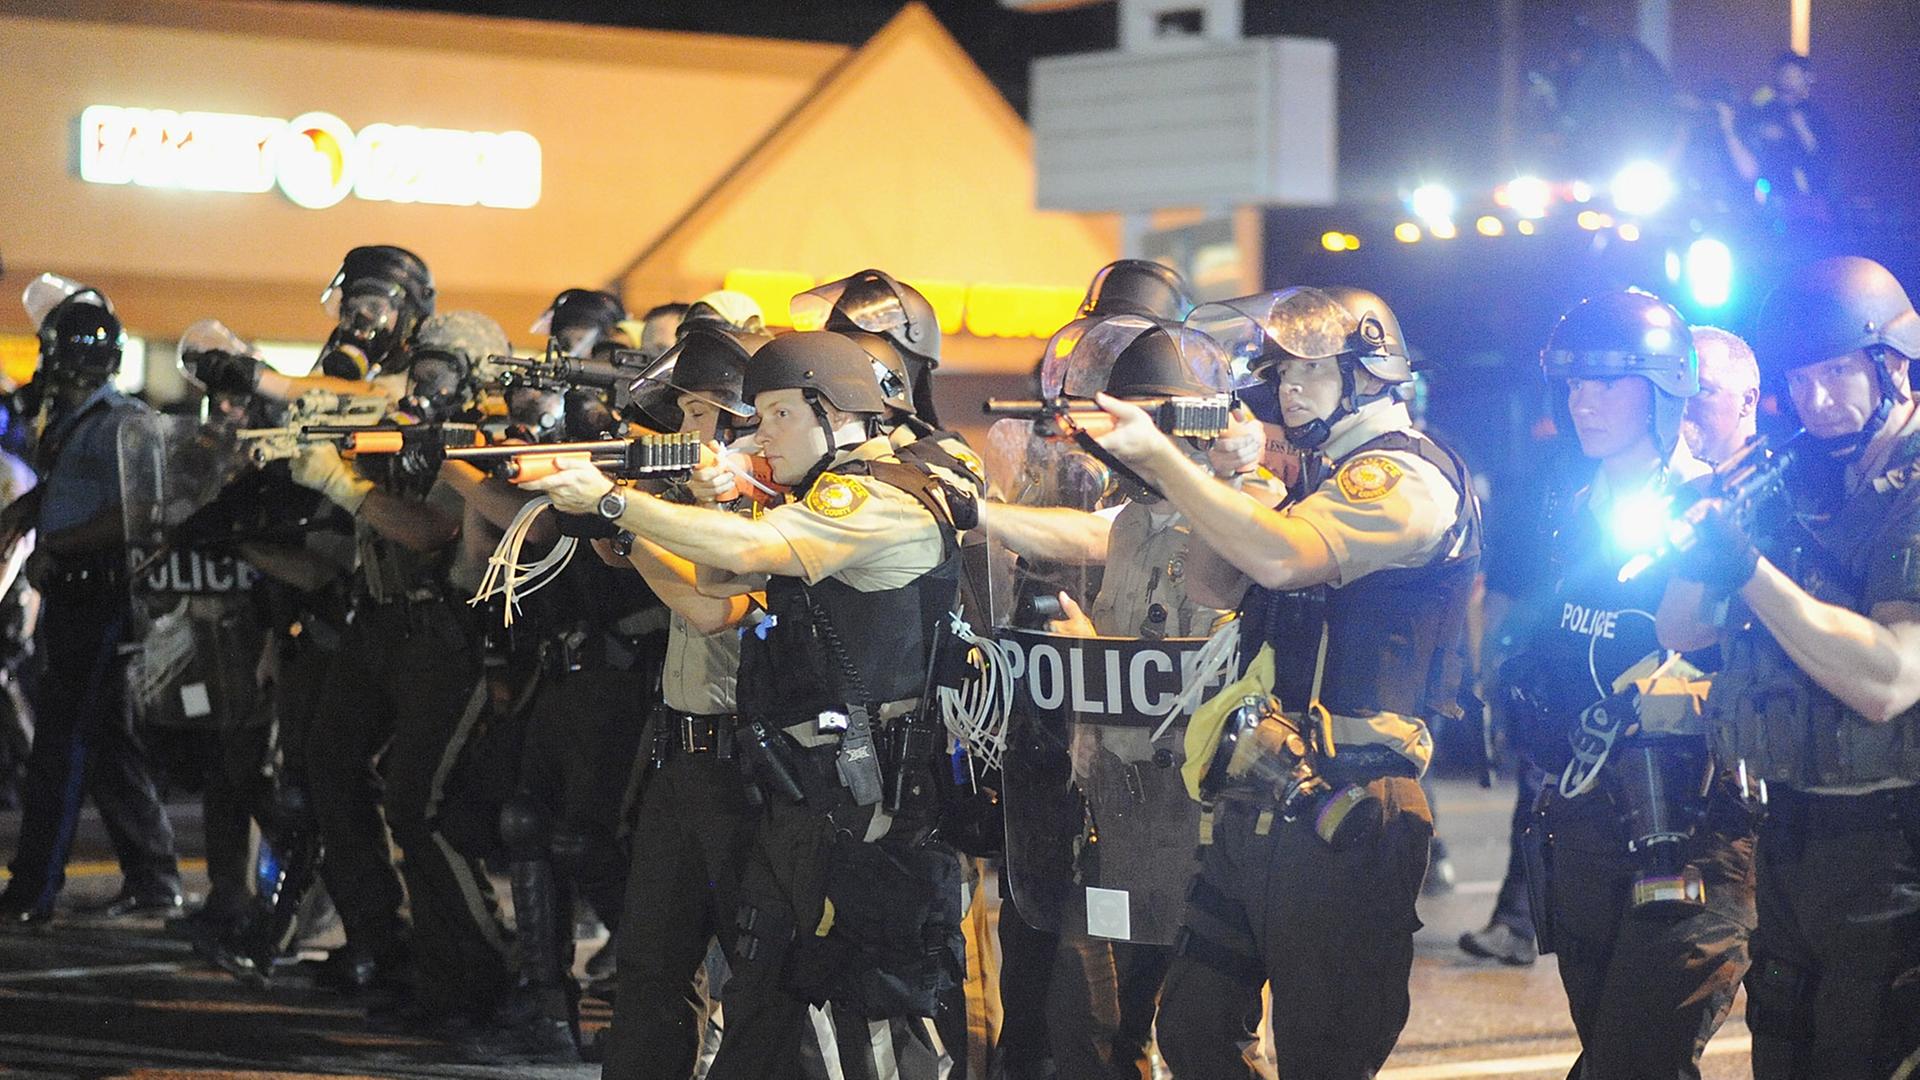 Die Polizei in der US-Kleinstadt Ferguson sieht sich mit Rassismusvorwürfen konfrontiert - und geht nach Ausschreitungen hart gegen Demonstranten vor.